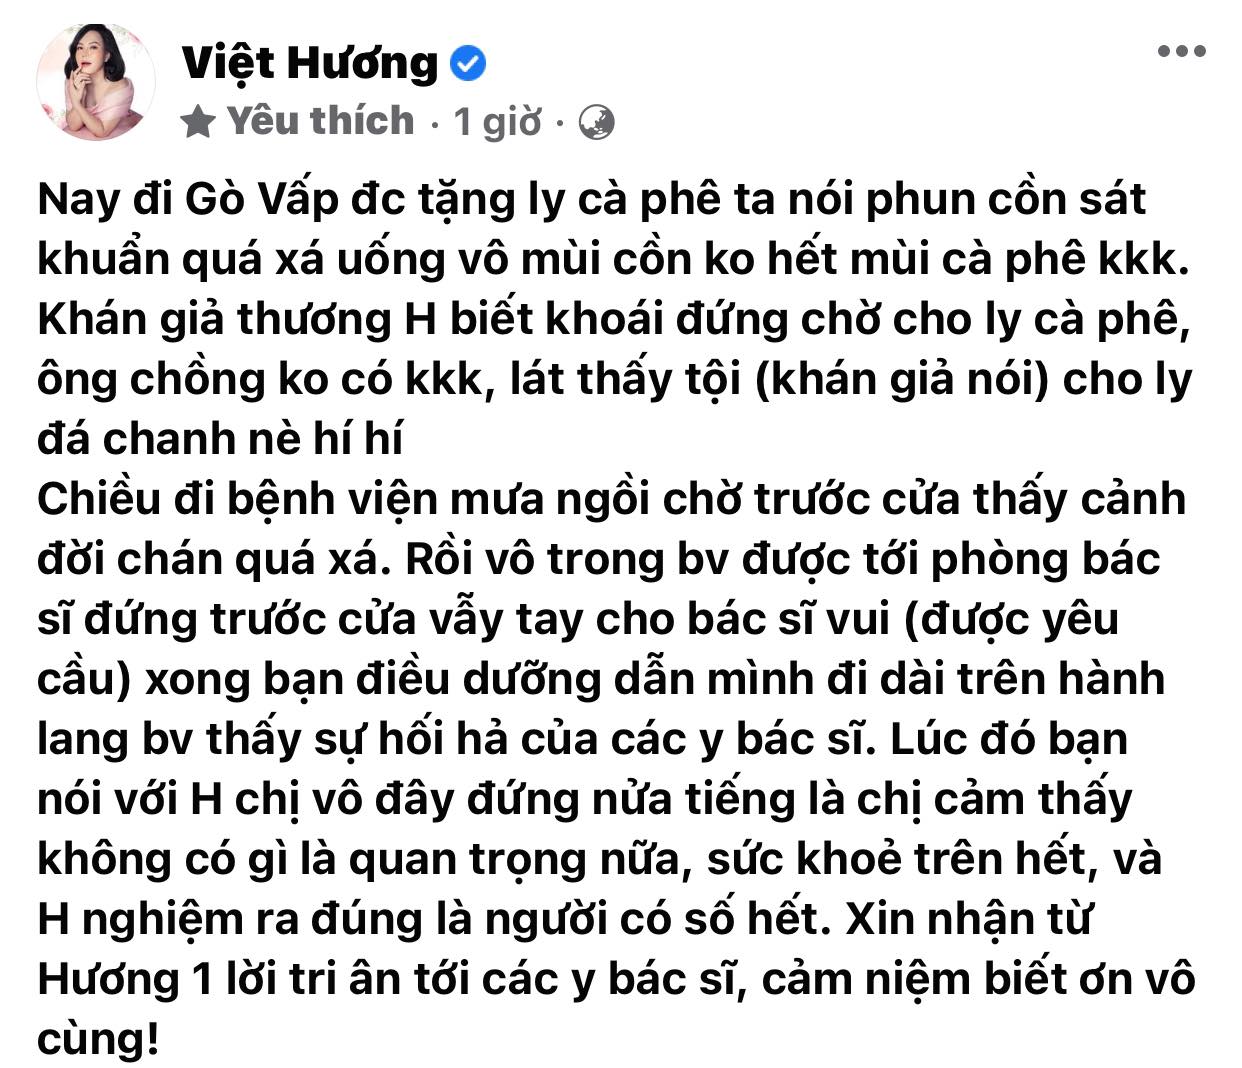 Viet-huong-dang-tam-thu-gui-den-cong-chung-ket-thuc-hanh-trinh-cuu-tro-sai-gon